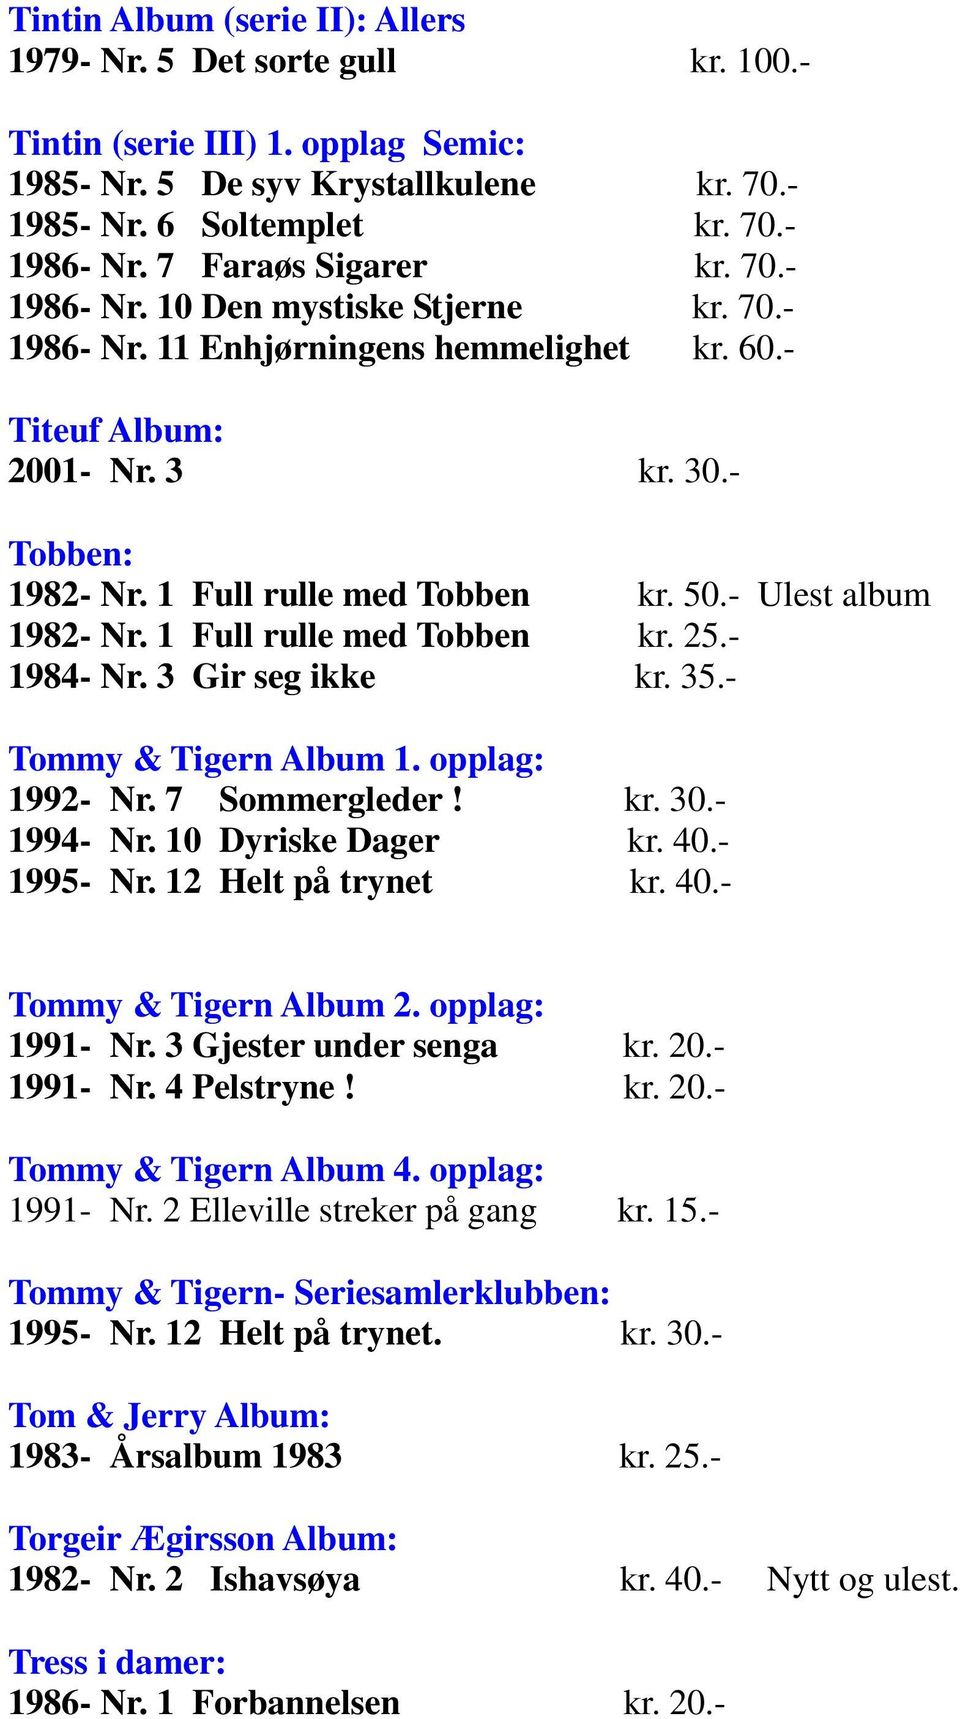 50.- Ulest album 1982- Nr. 1 Full rulle med Tobben kr. 25.- 1984- Nr. 3 Gir seg ikke kr. 35.- Tommy & Tigern Album 1. opplag: 1992- Nr. 7 Sommergleder! kr. 30.- 1994- Nr. 10 Dyriske Dager kr. 40.